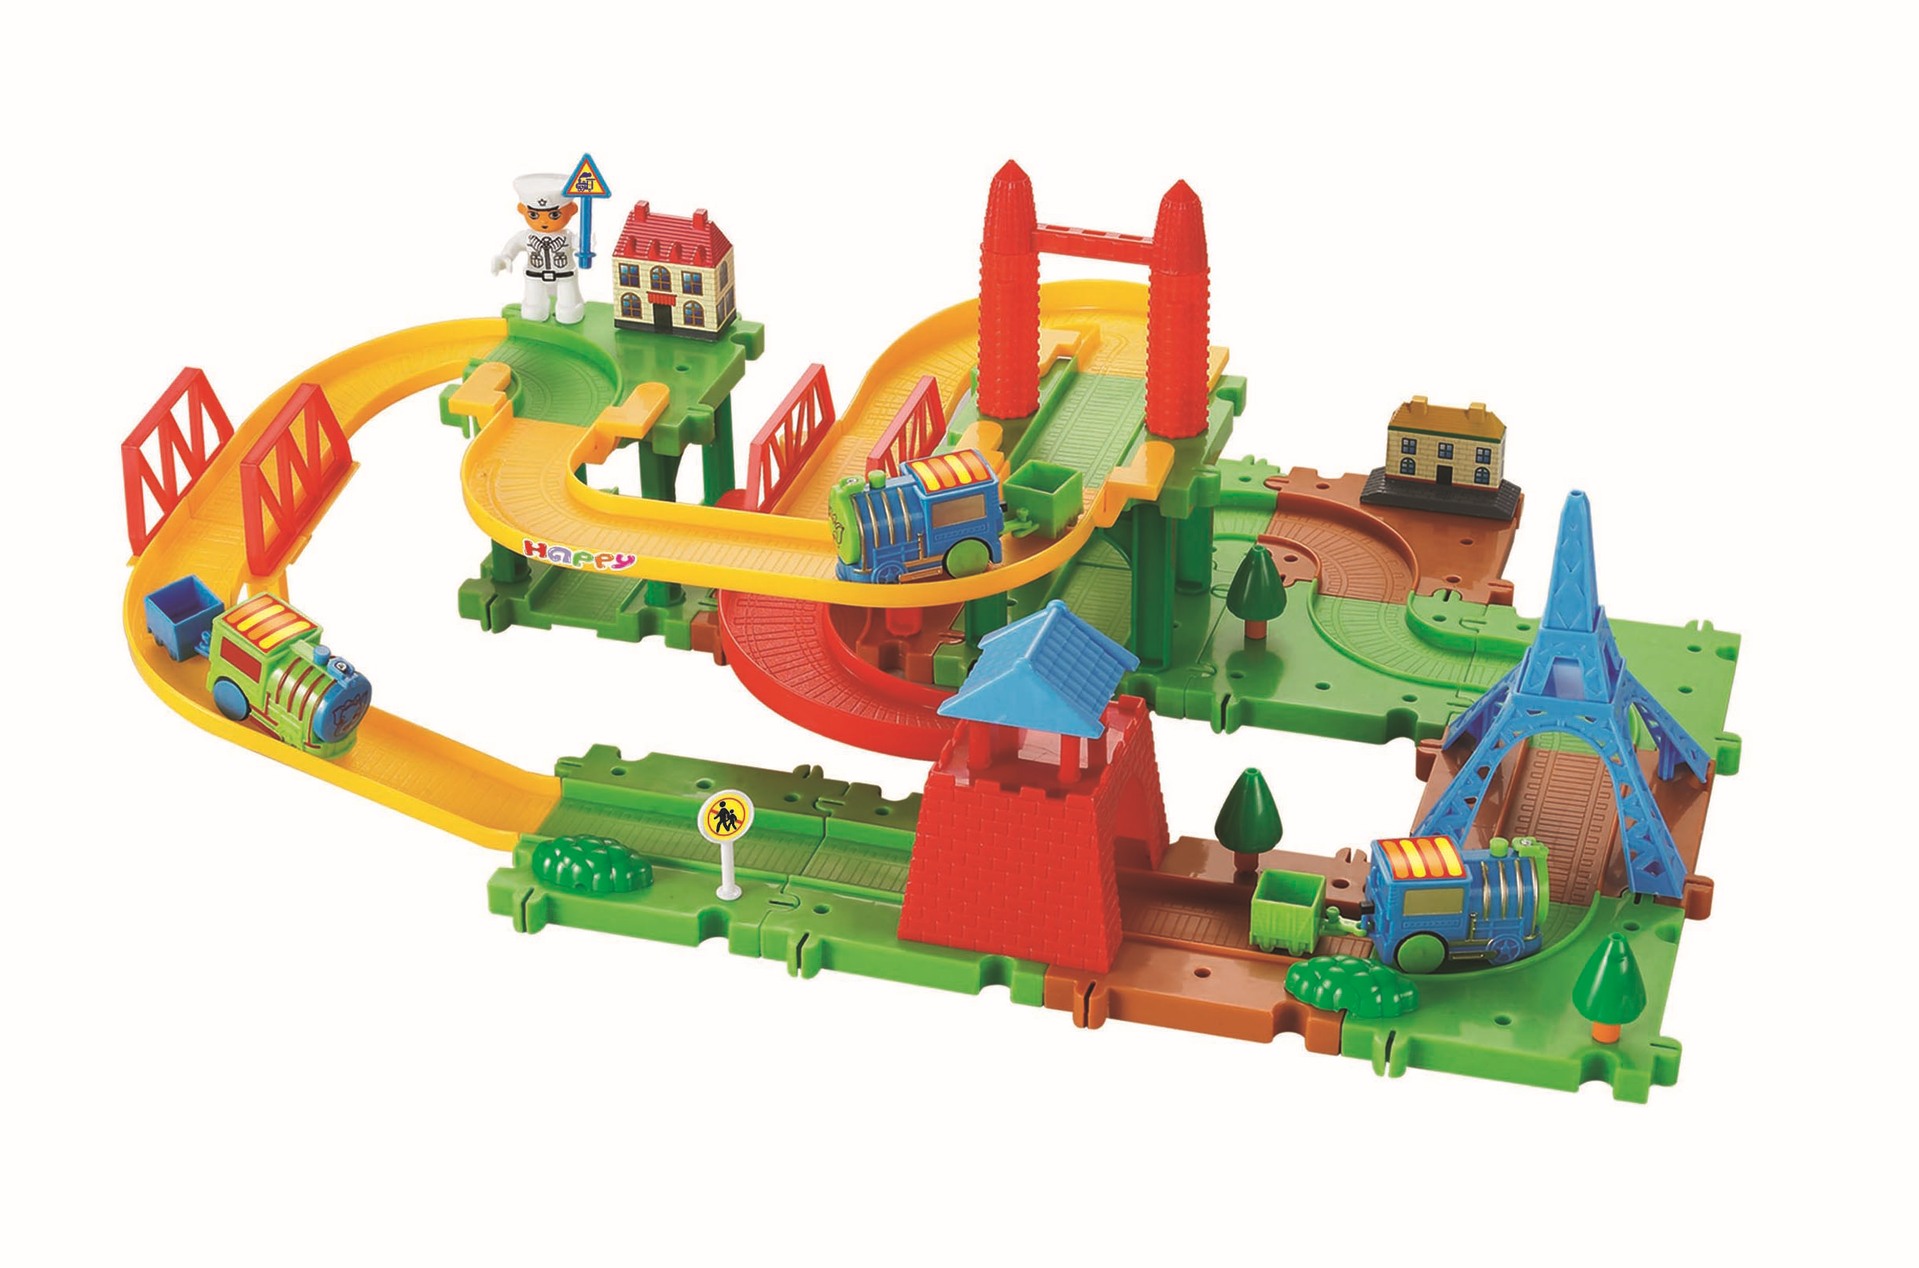 軌道火車(供兒童玩樂的機械玩具)